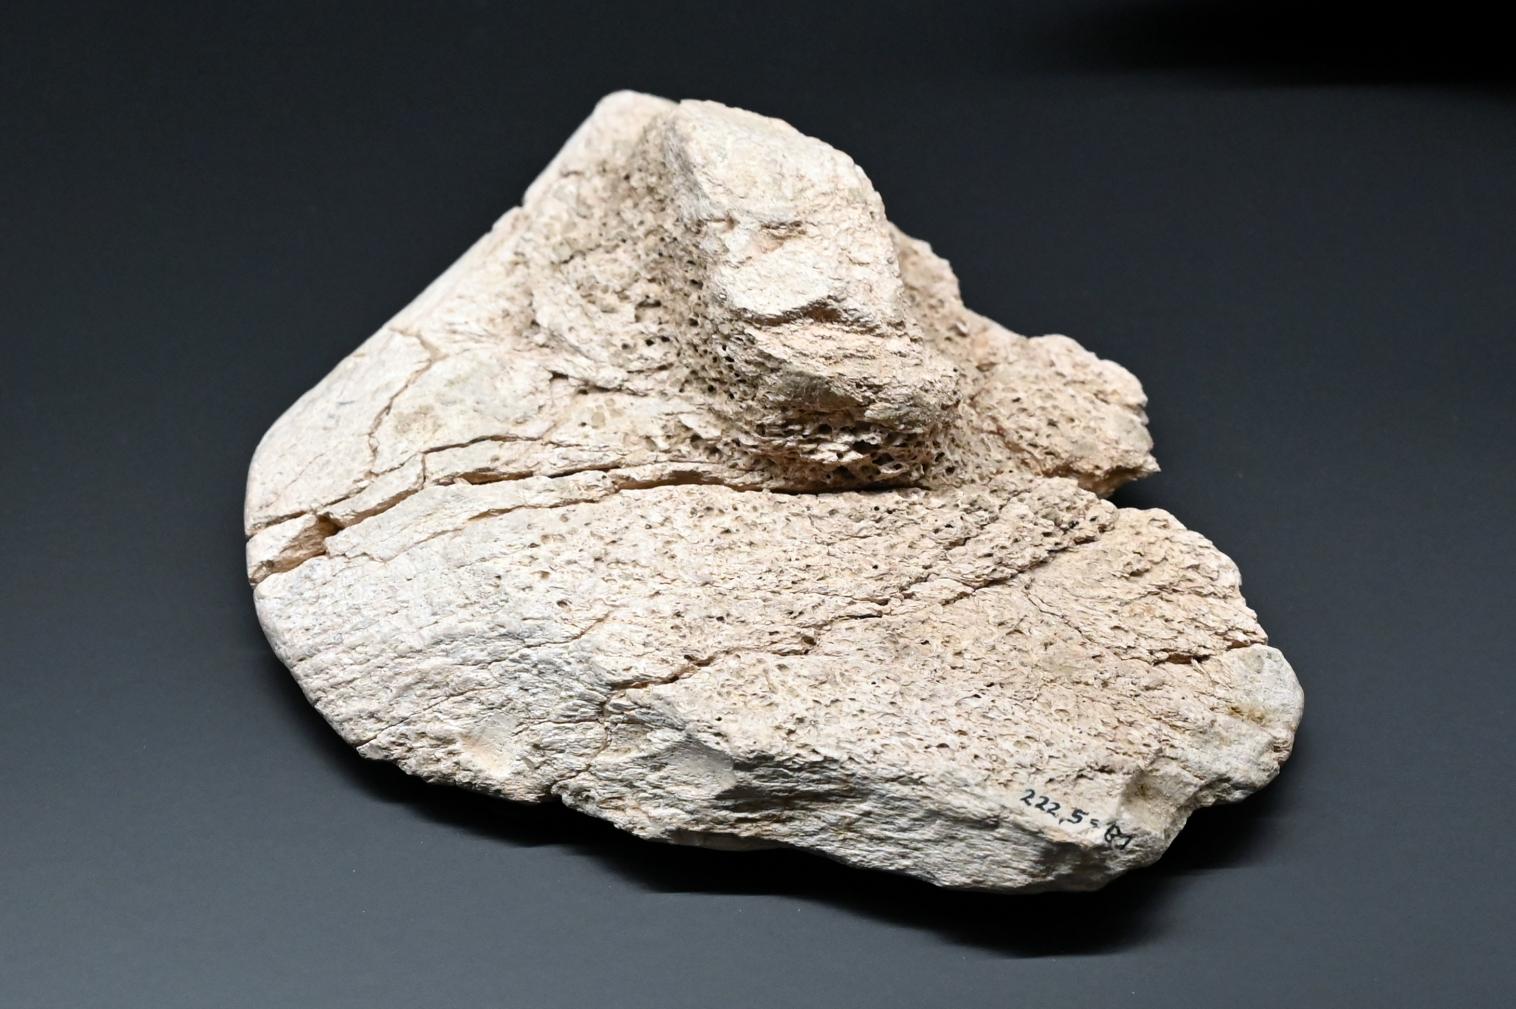 Schaberartiges Gerät, Reinsdorf-Warmzeit, 370000 v. Chr., 370000 v. Chr., Bild 1/2